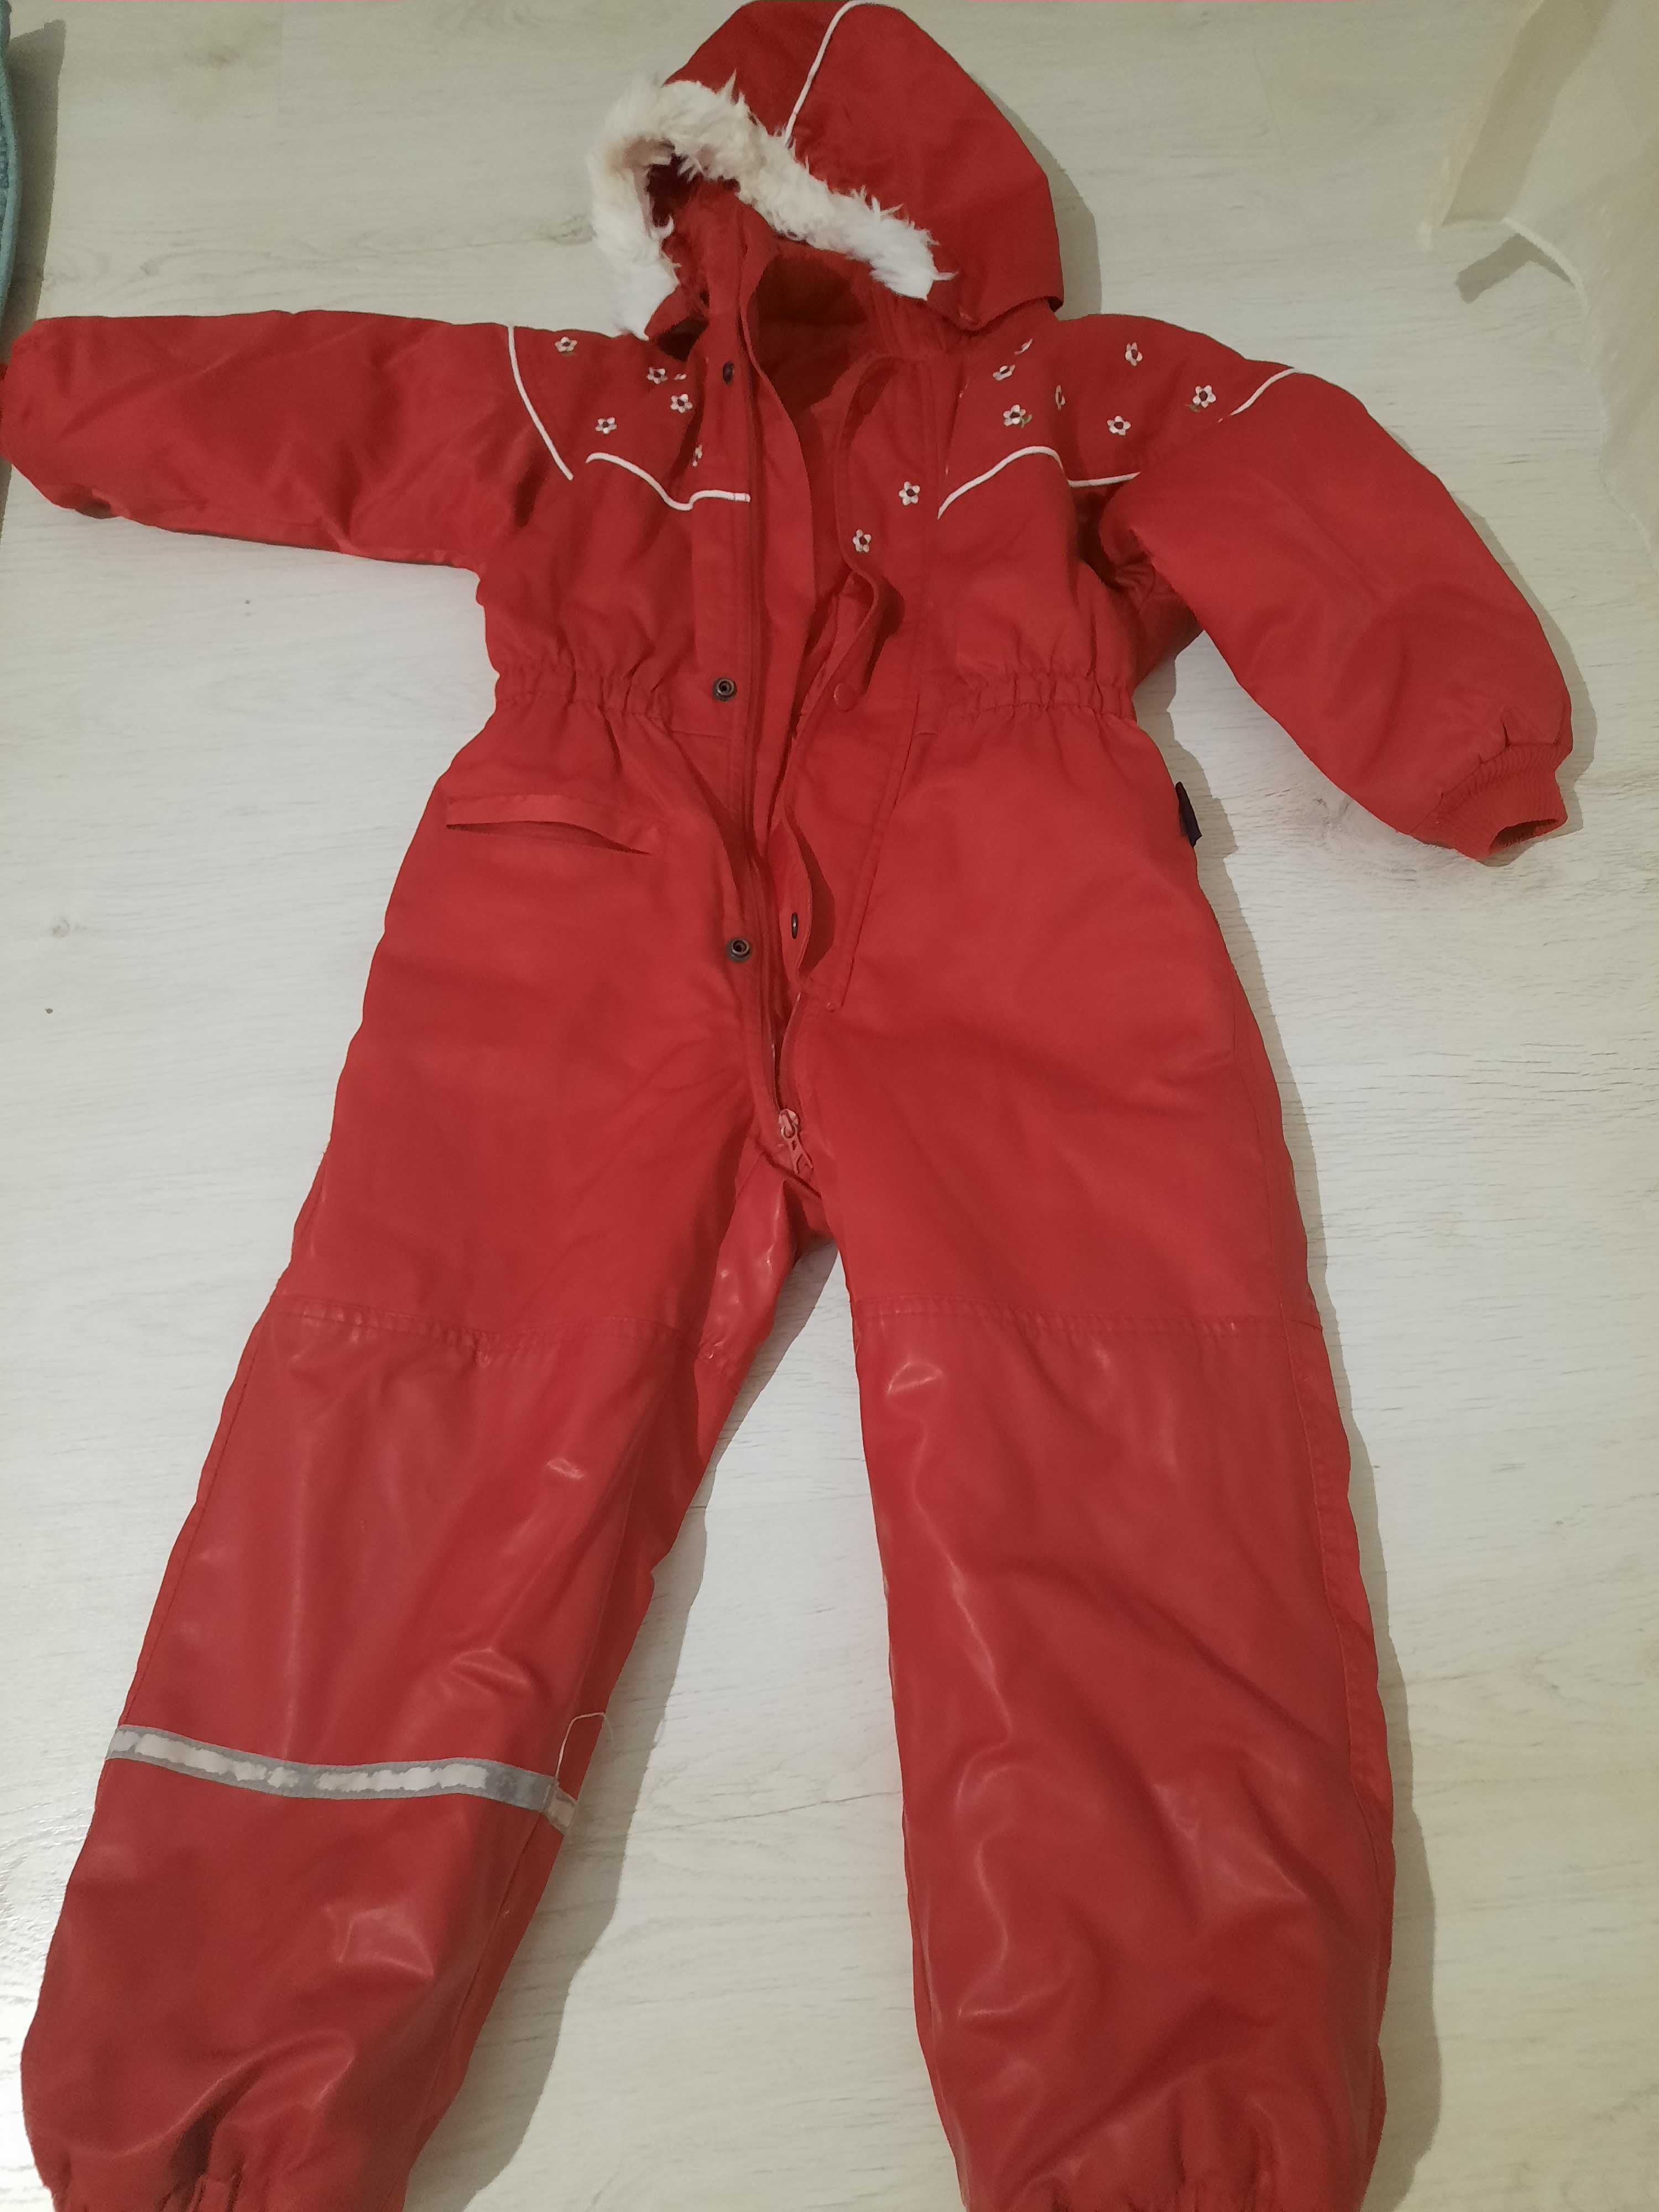 Costum ski complet, plastifiat, fetita marime 116